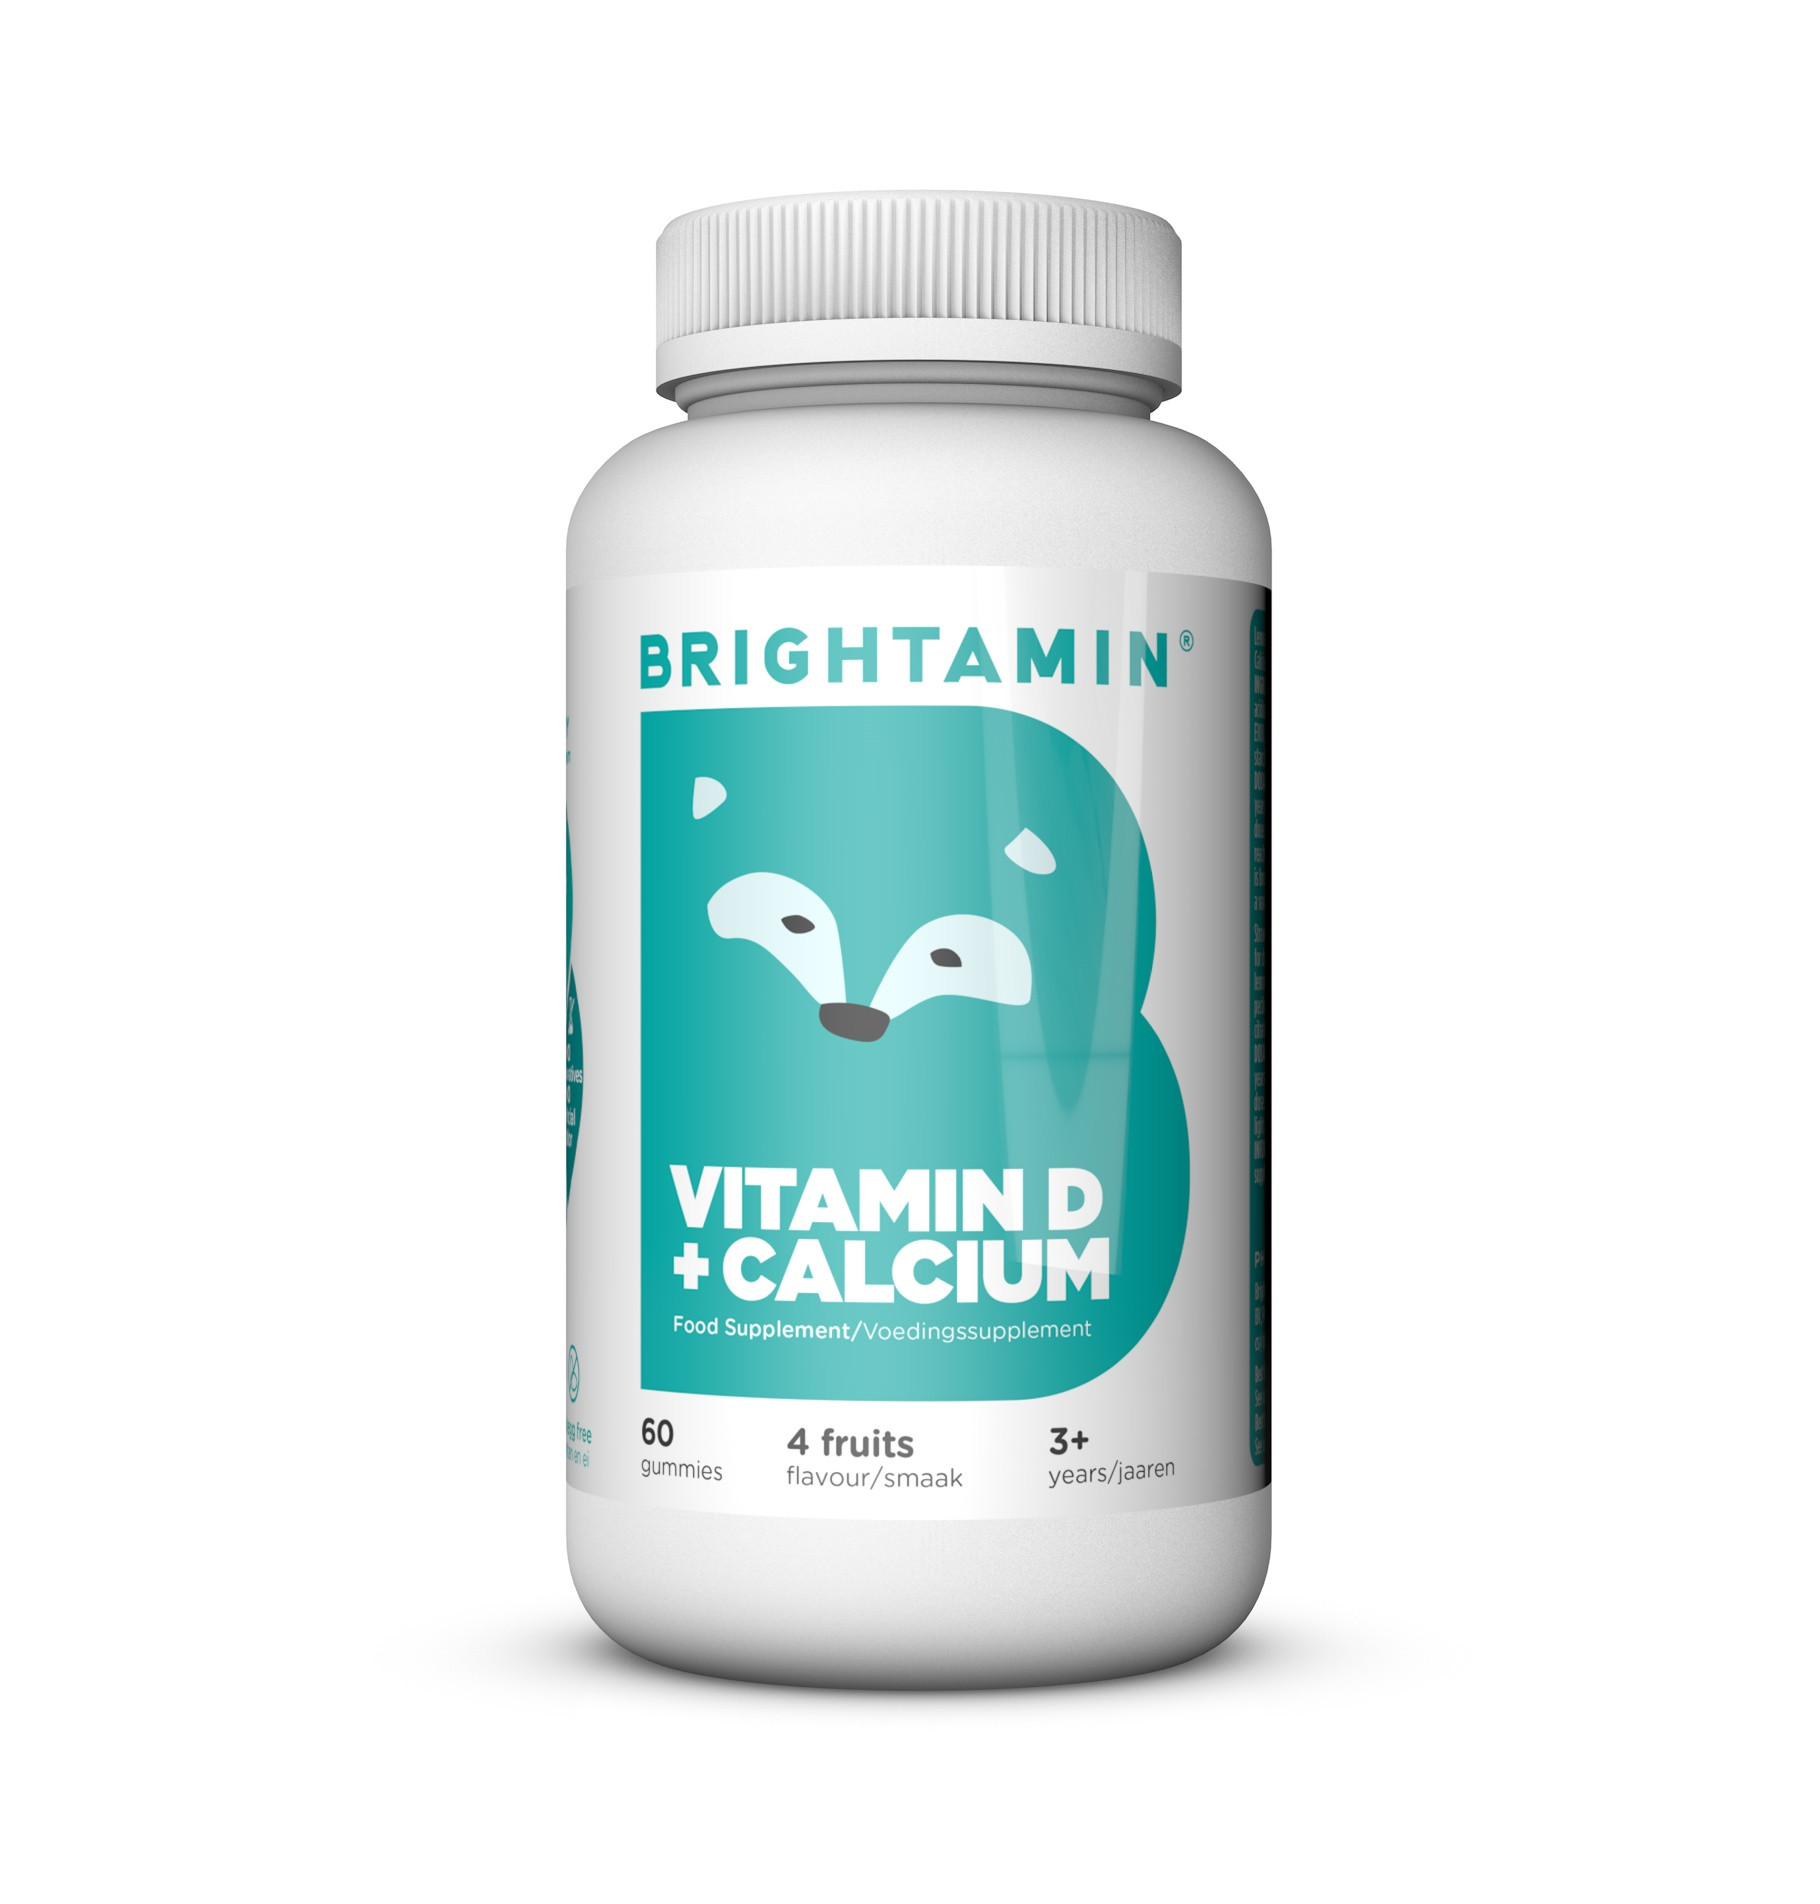 Brightamin Vitamin D supplement for children.